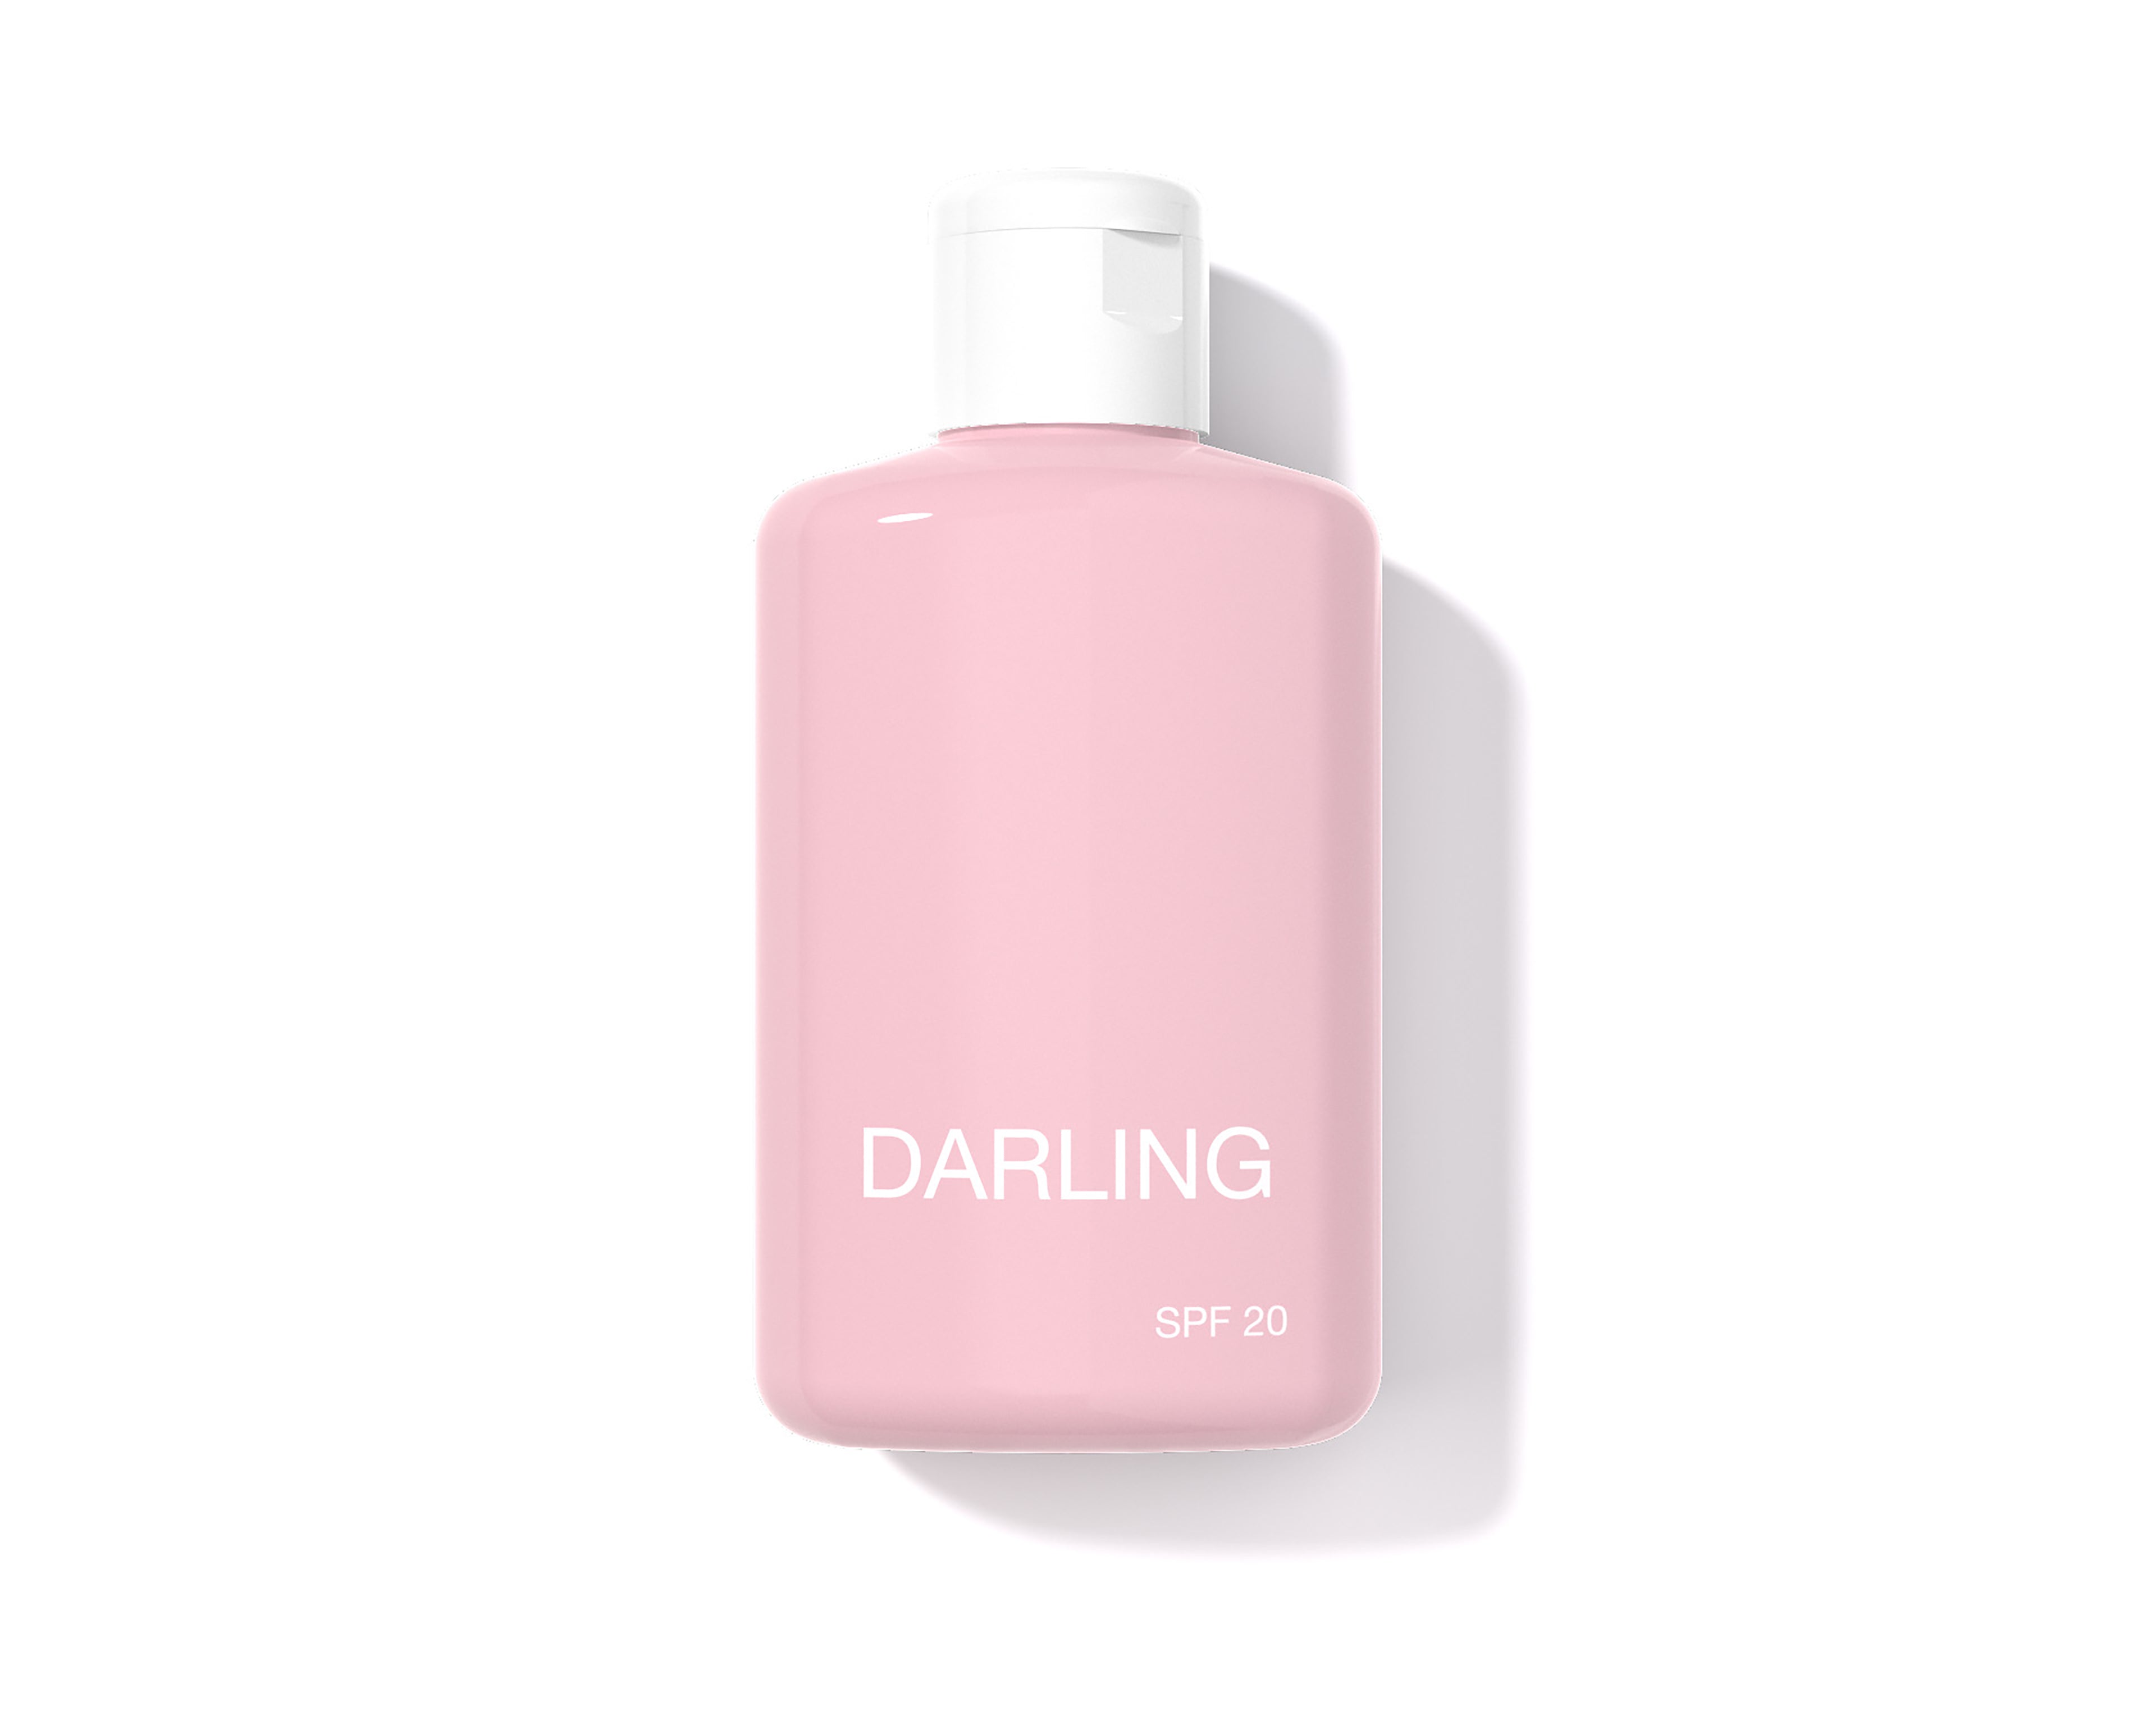 Darling SPF 20